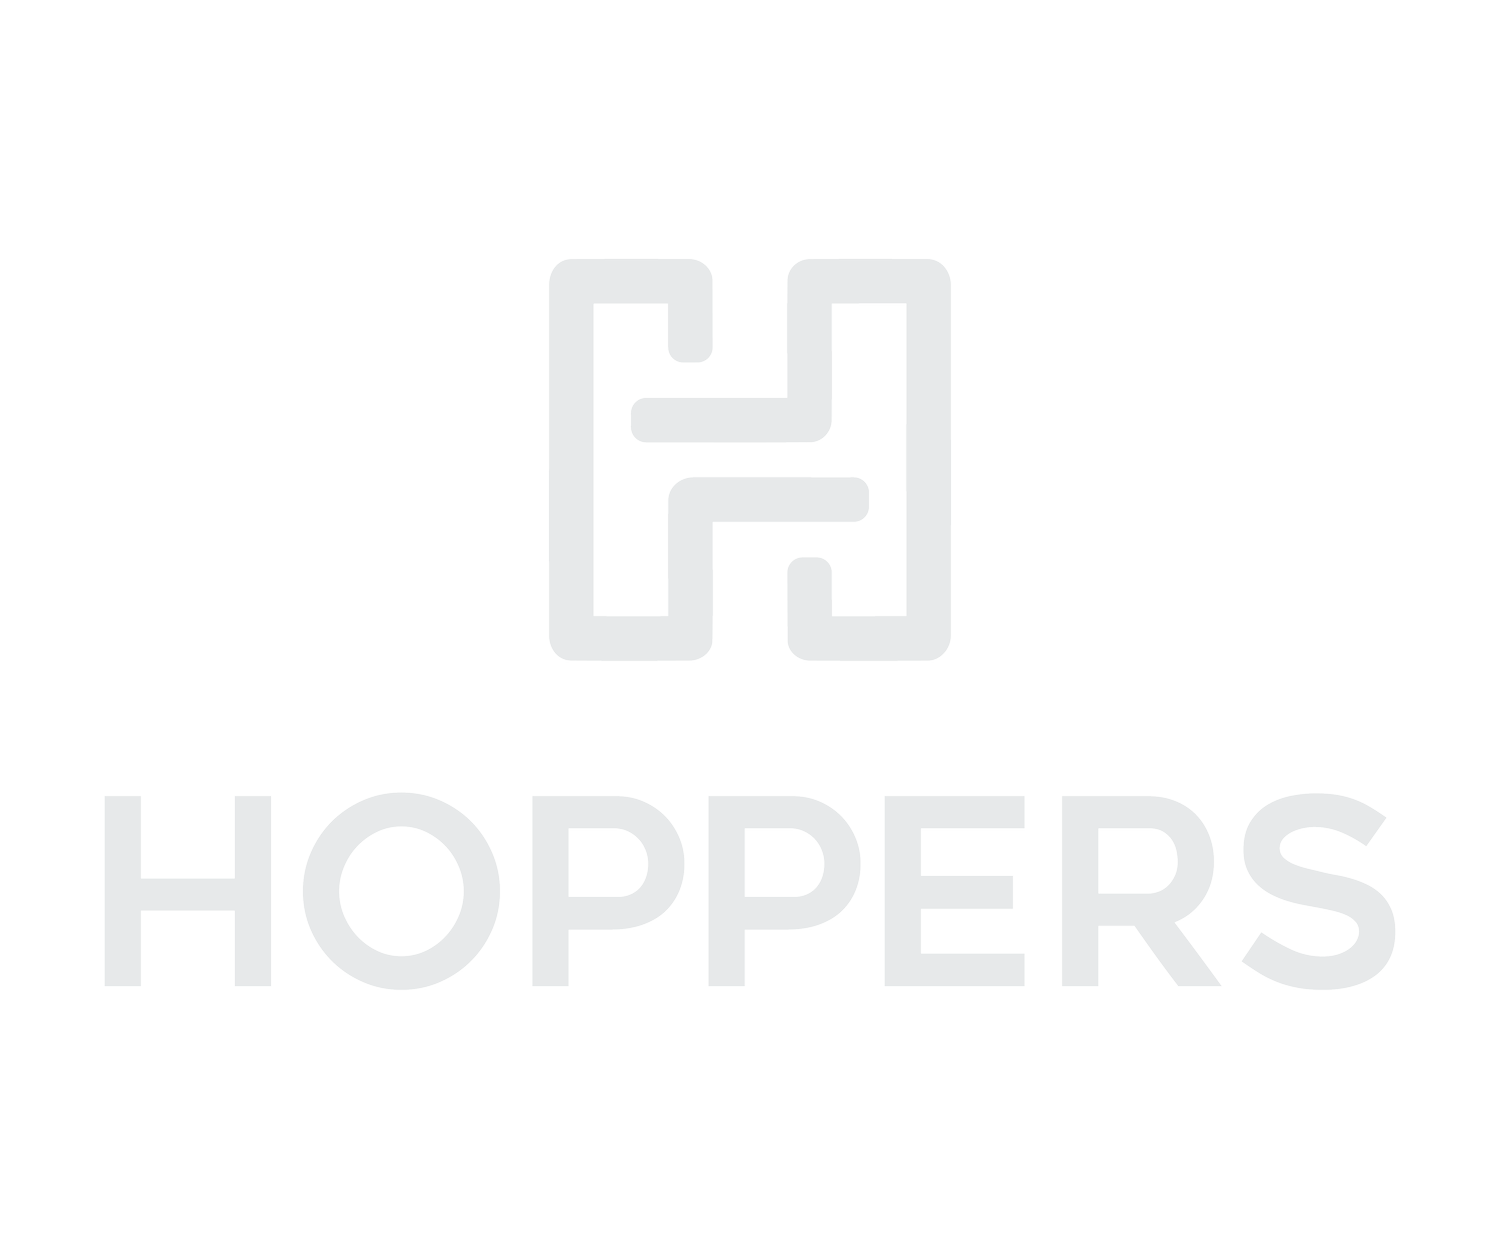 Hopper Living logo